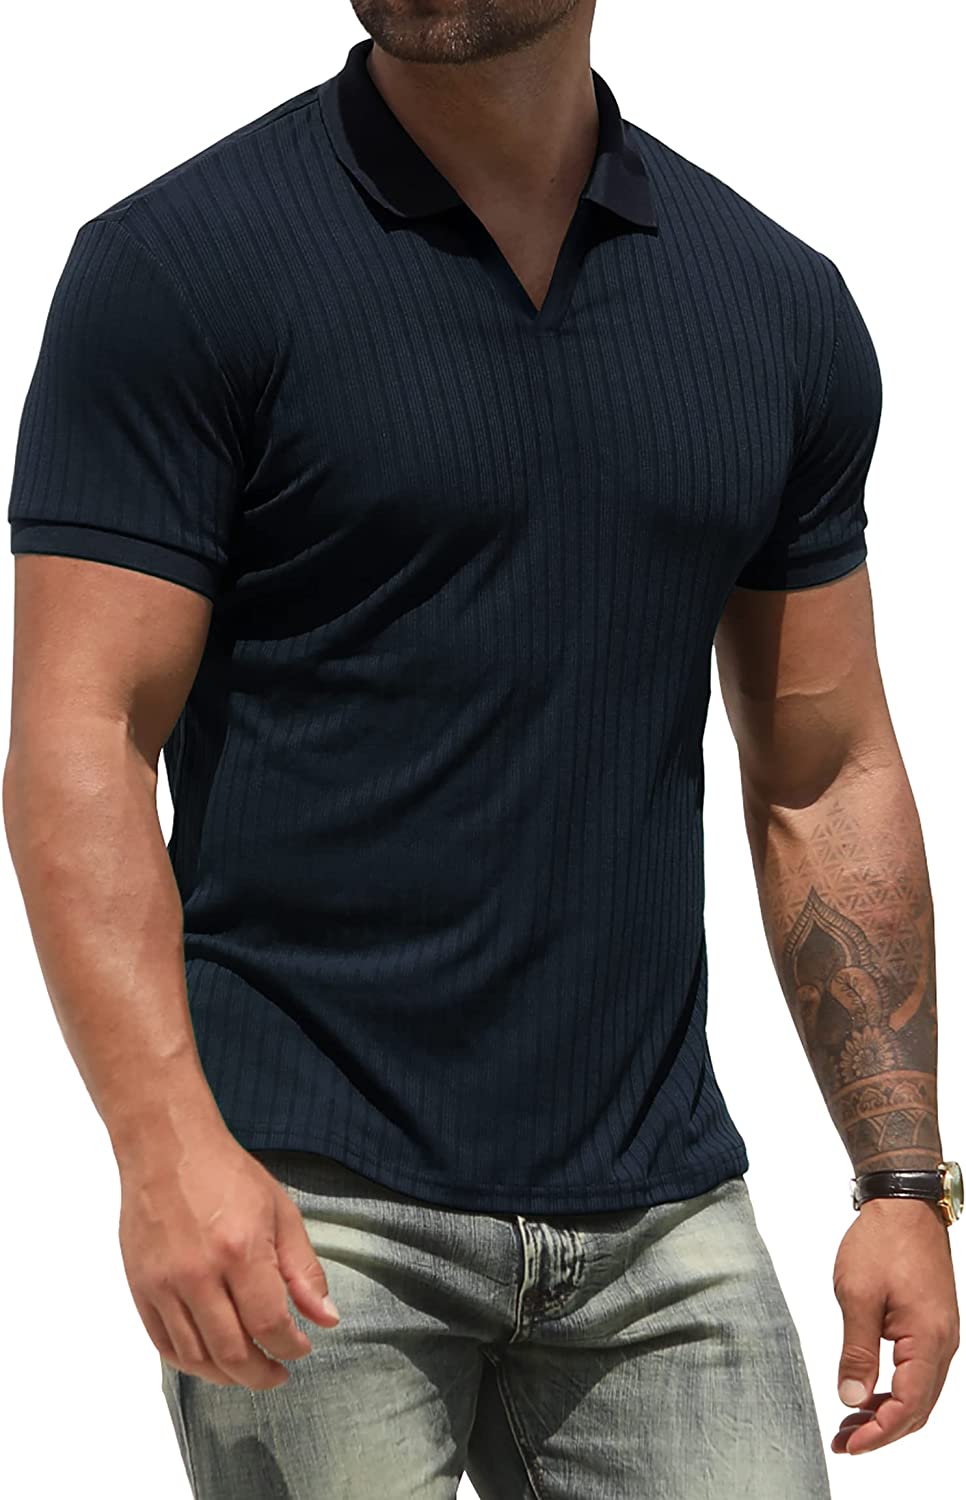 NITAGUT Polo Shirts for Men V Neck Slim Fit Short Sleeve